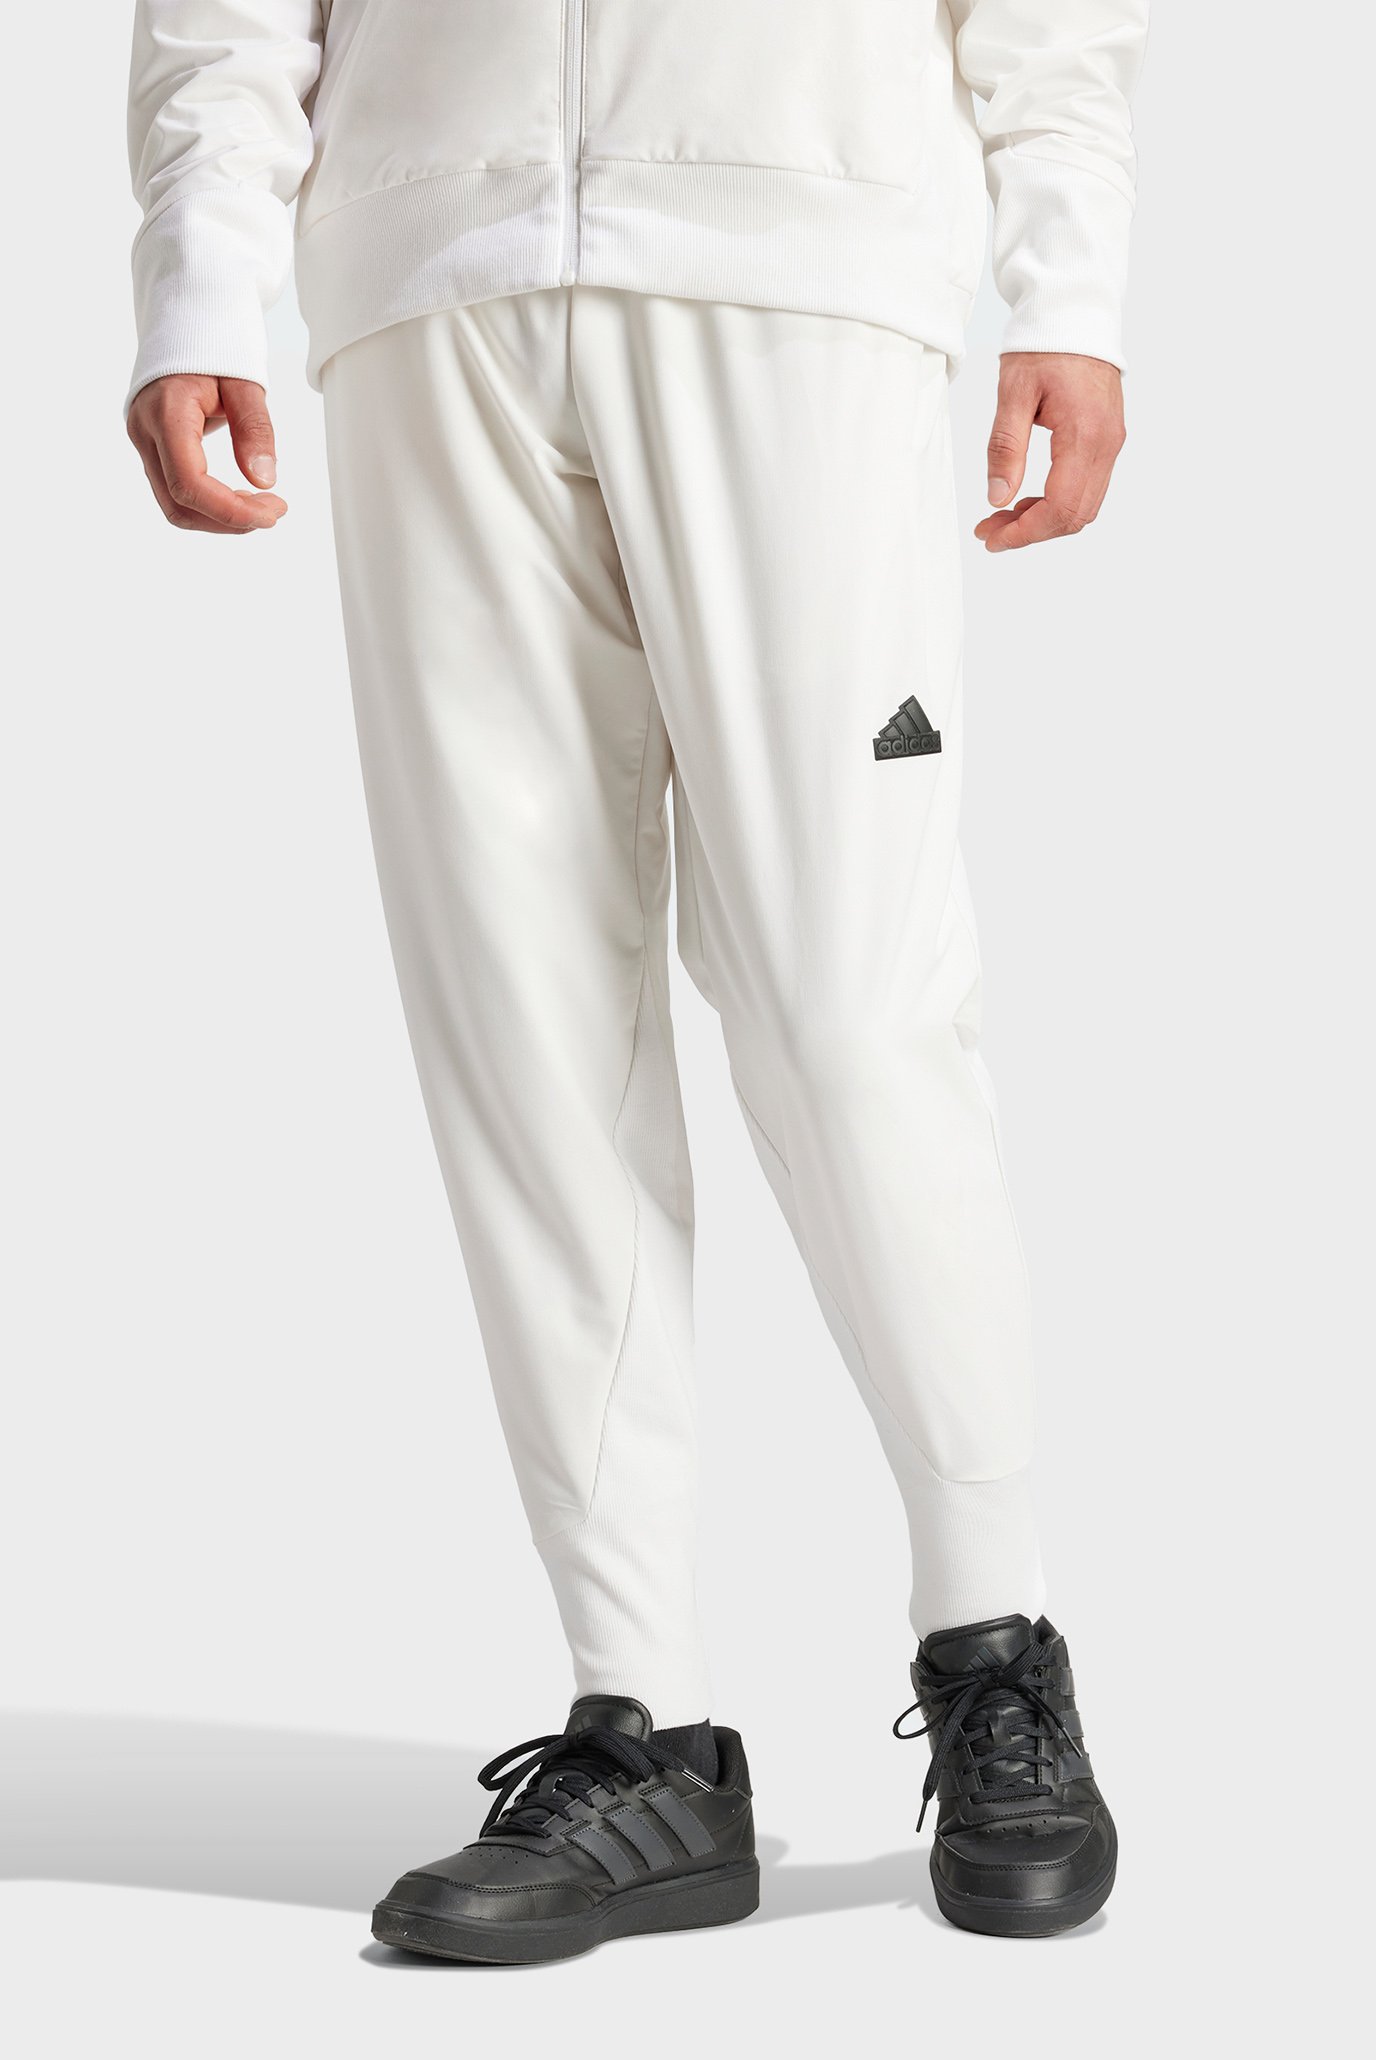 Чоловічі білі спортивні штани Z.N.E. Woven 1